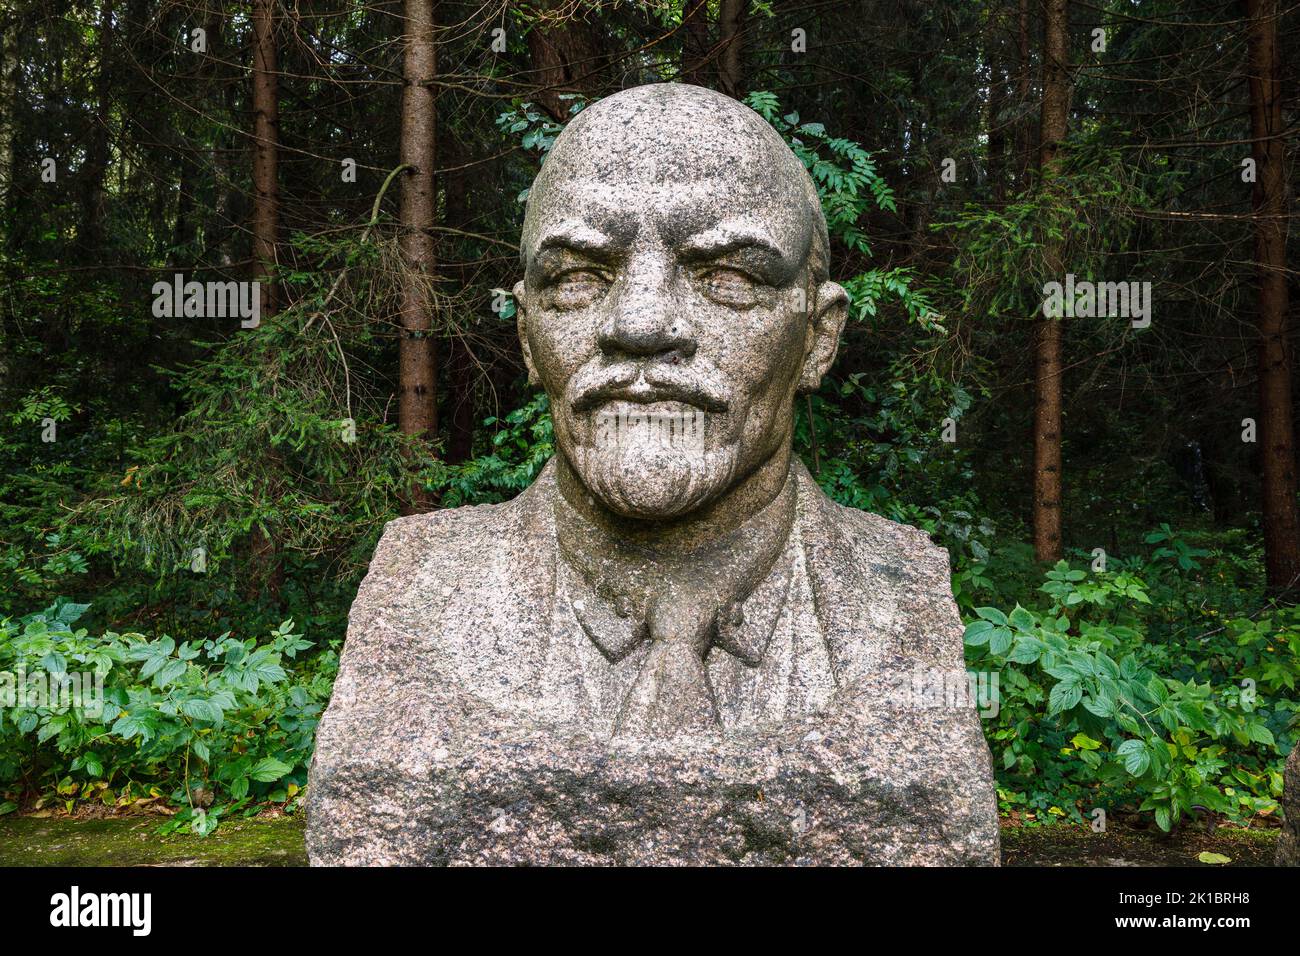 Buste sculptural de Lénine, chef révolutionnaire russe. Druskininkai, Lituanie, 12 septembre 2022 Banque D'Images